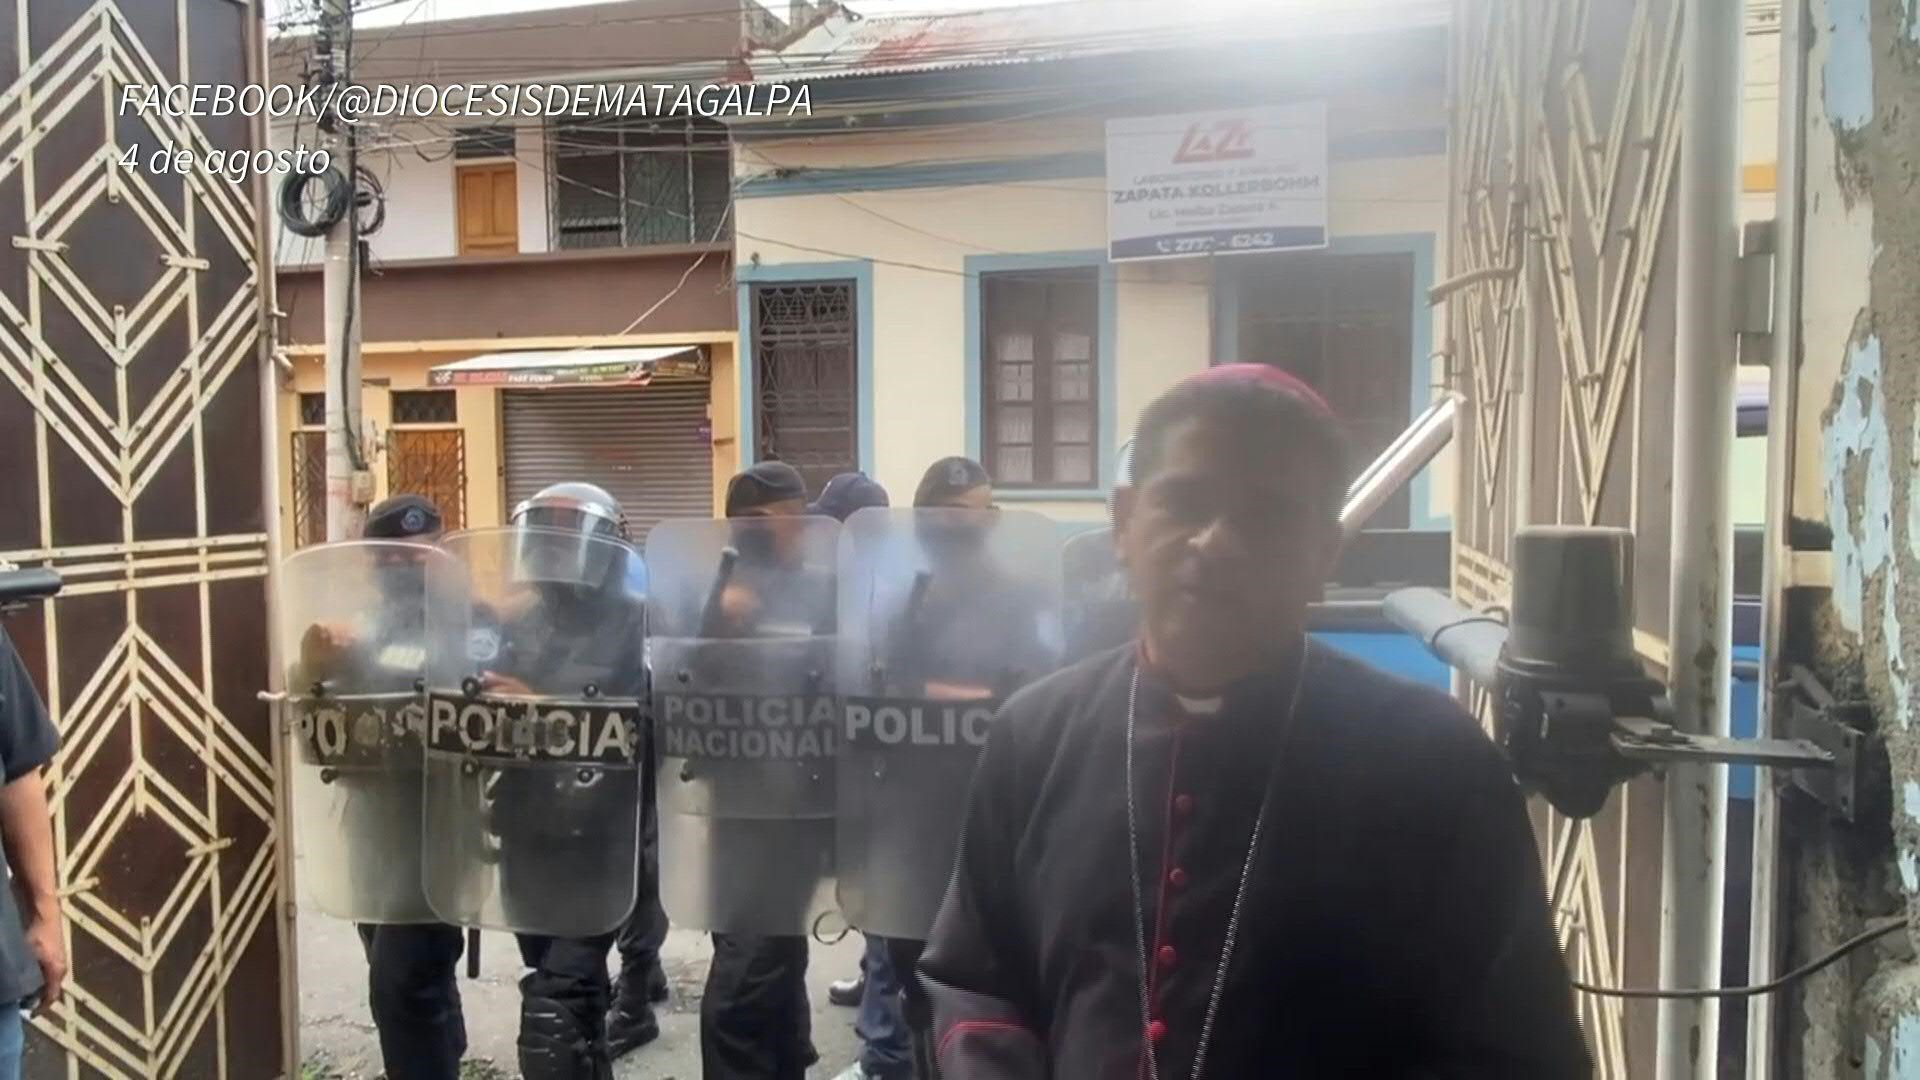 El obispo de la Diócesis de Matagalpa, monseñor Rolando Álvarez, fue condenado a 26 años de cárcel por "traición a la patria" y "propagación de noticias falsas". (Foto cortesía)